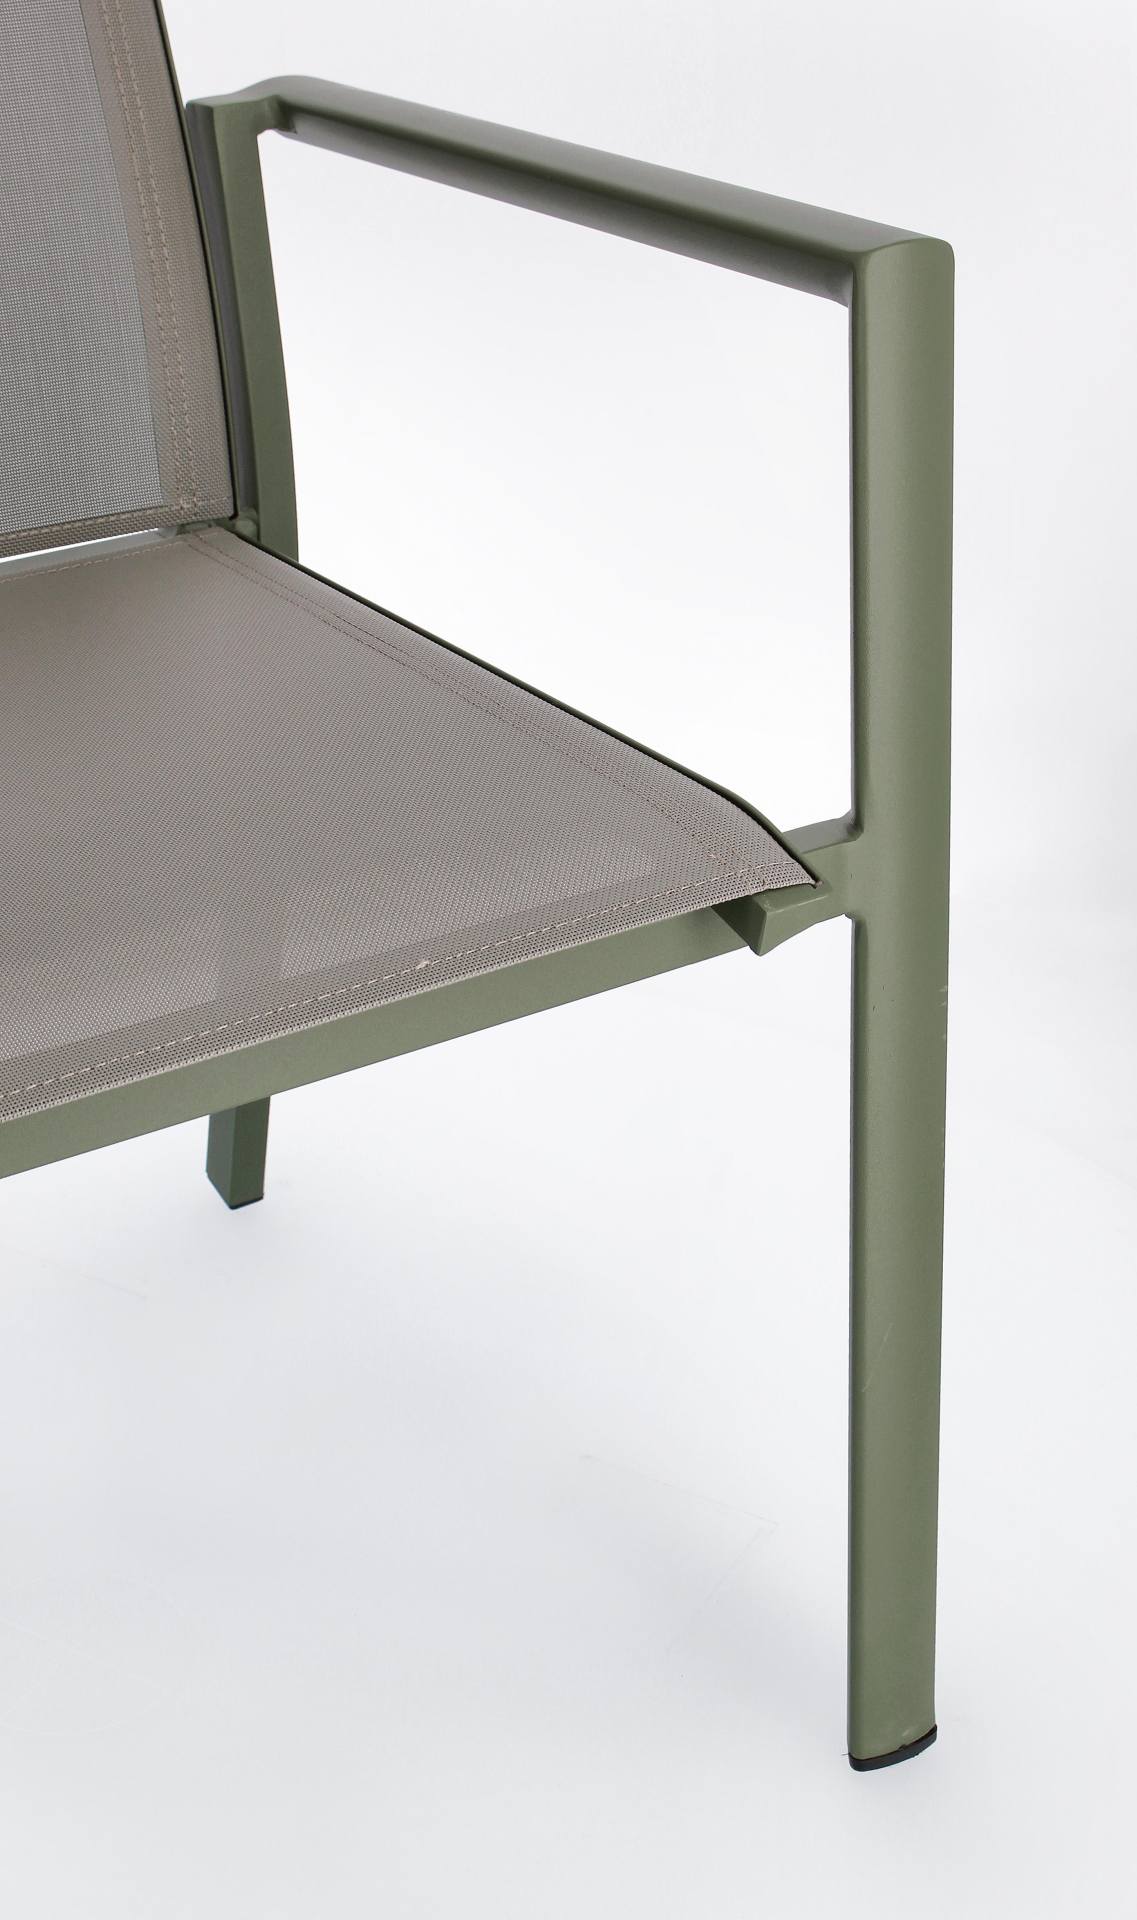 Der Gartenstuhl Konnor überzeugt mit seinem modernen Design. Gefertigt wurde er aus Textilene, welcher einen grauen Farbton besitzt. Das Gestell ist aus Aluminium und hat eine grüne Farbe. Der Stuhl verfügt über eine Sitzhöhe von 45 cm und ist für den Out